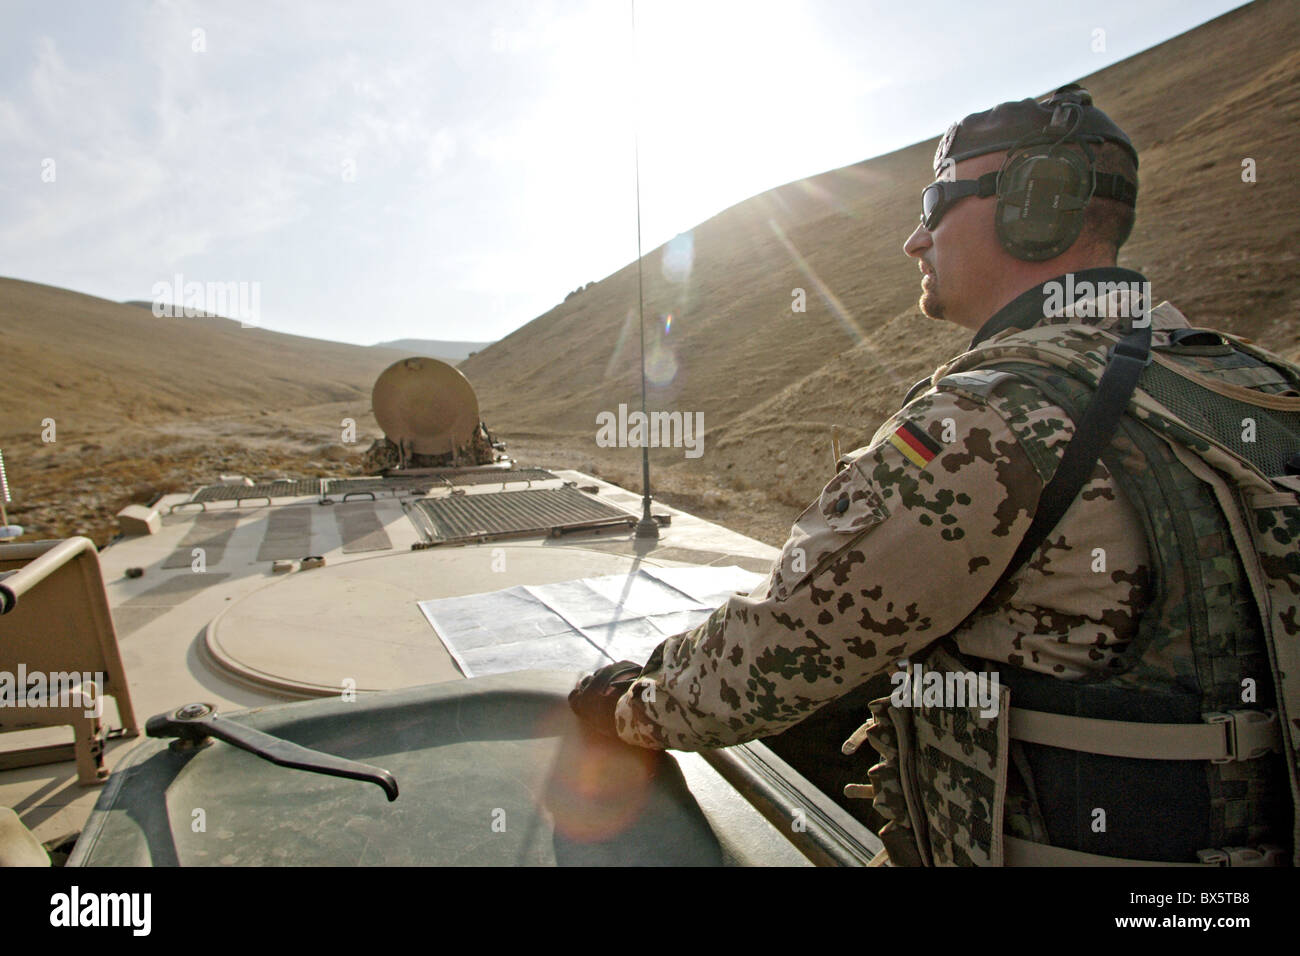 Soldat de l'ISAF sur une patrouille, Mazar-e Sharif, Afghanistan Banque D'Images